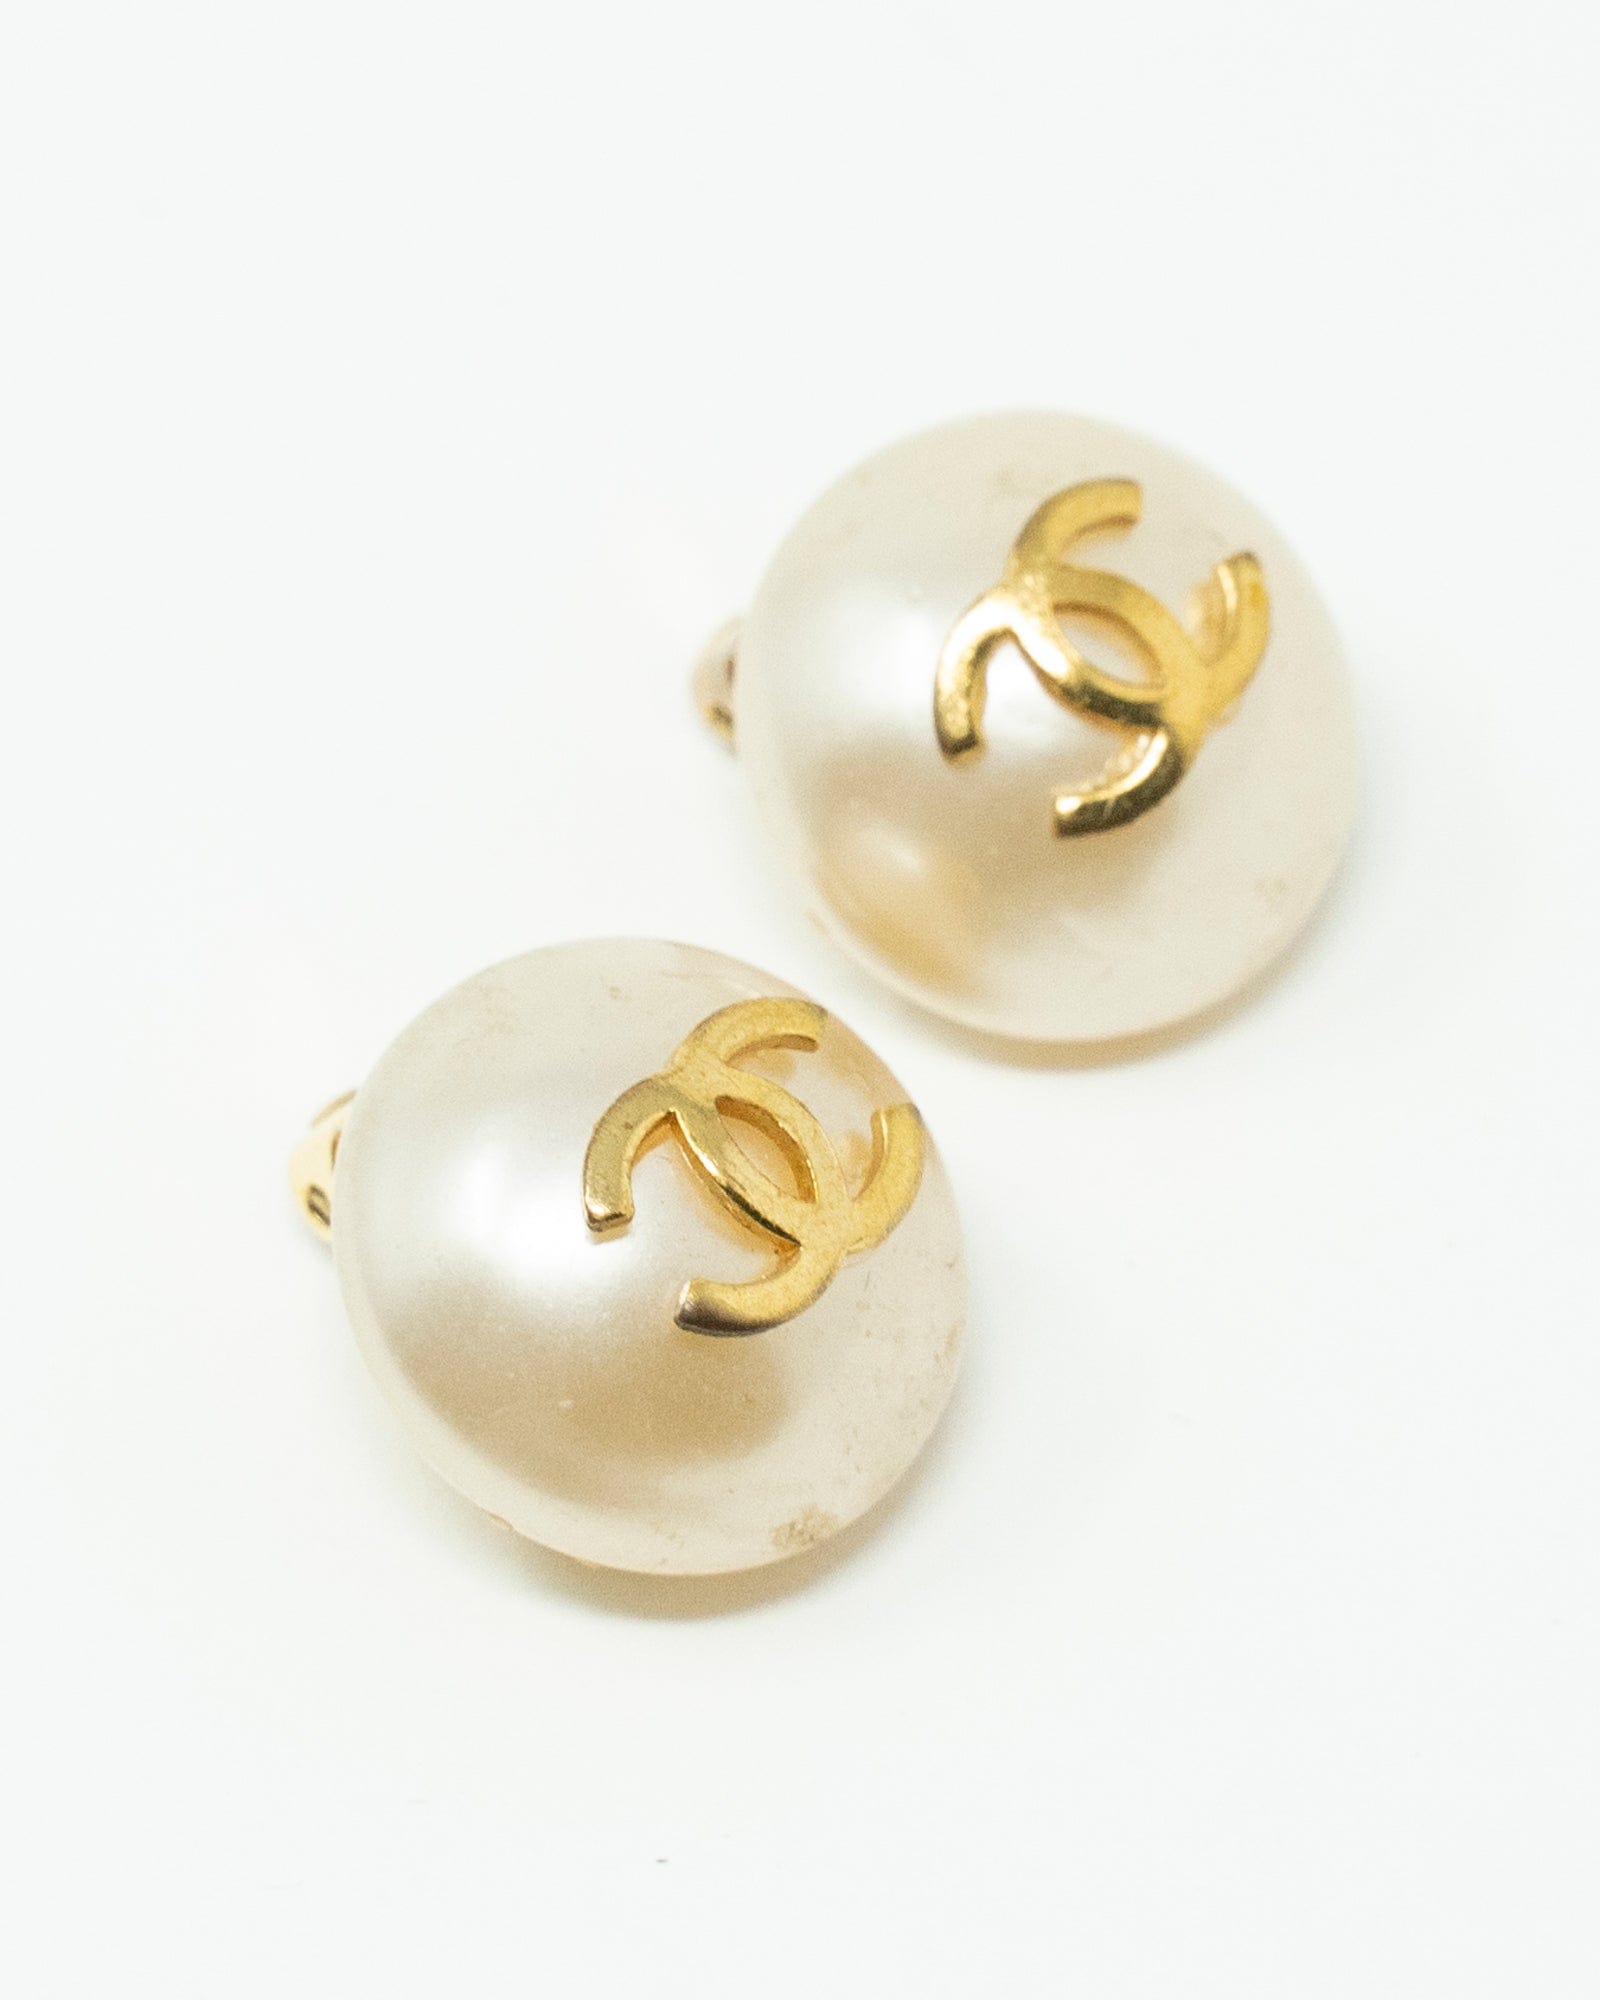 Chanel 1997 Teardrop Cc Pearl Earrings 12707 - 2 Pieces